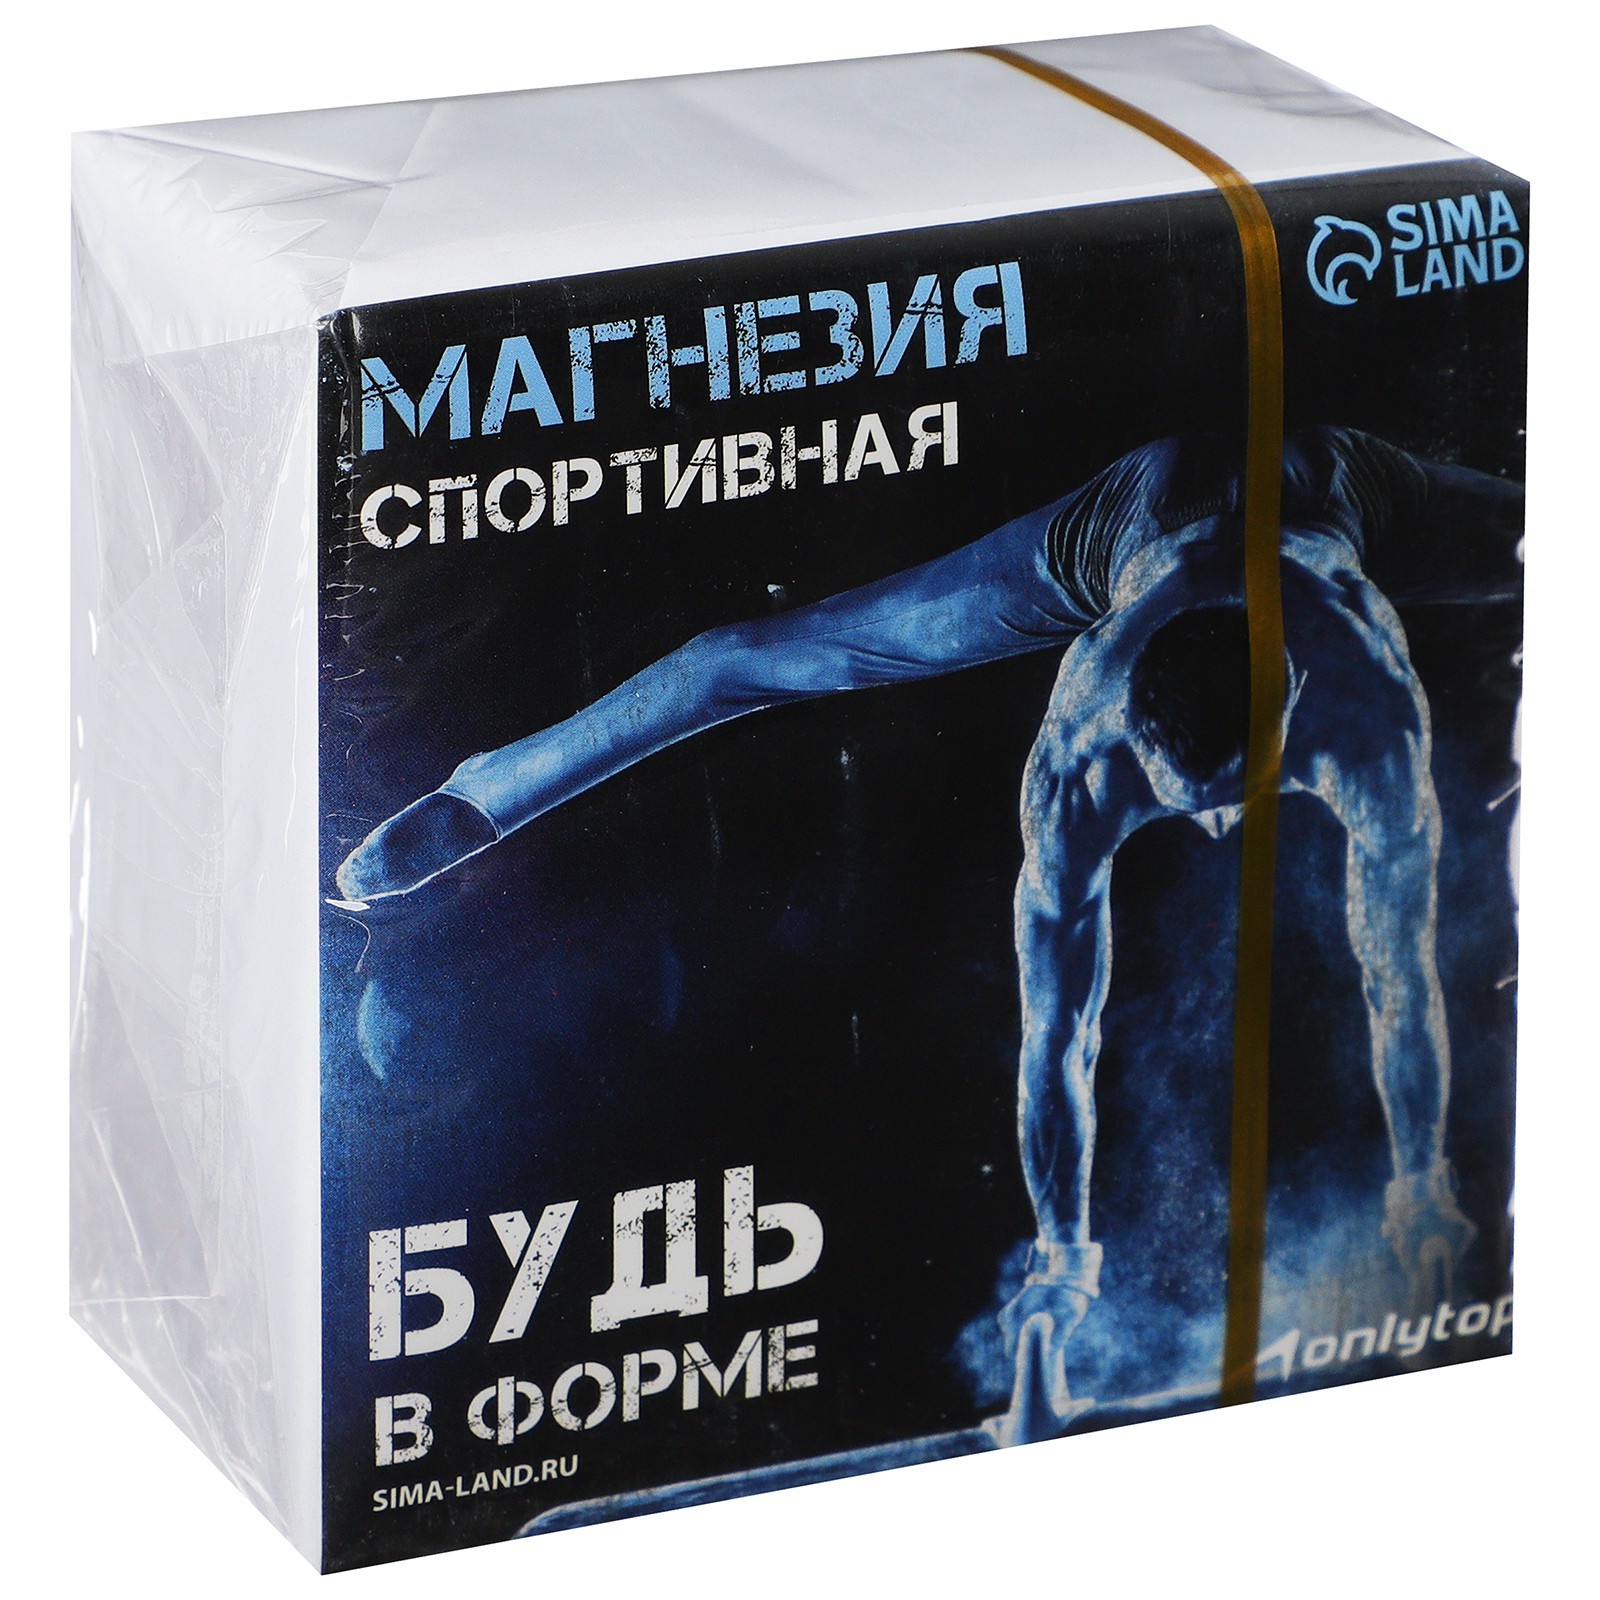 Купить магнезию в интернет магазине luchistii-sudak.ru